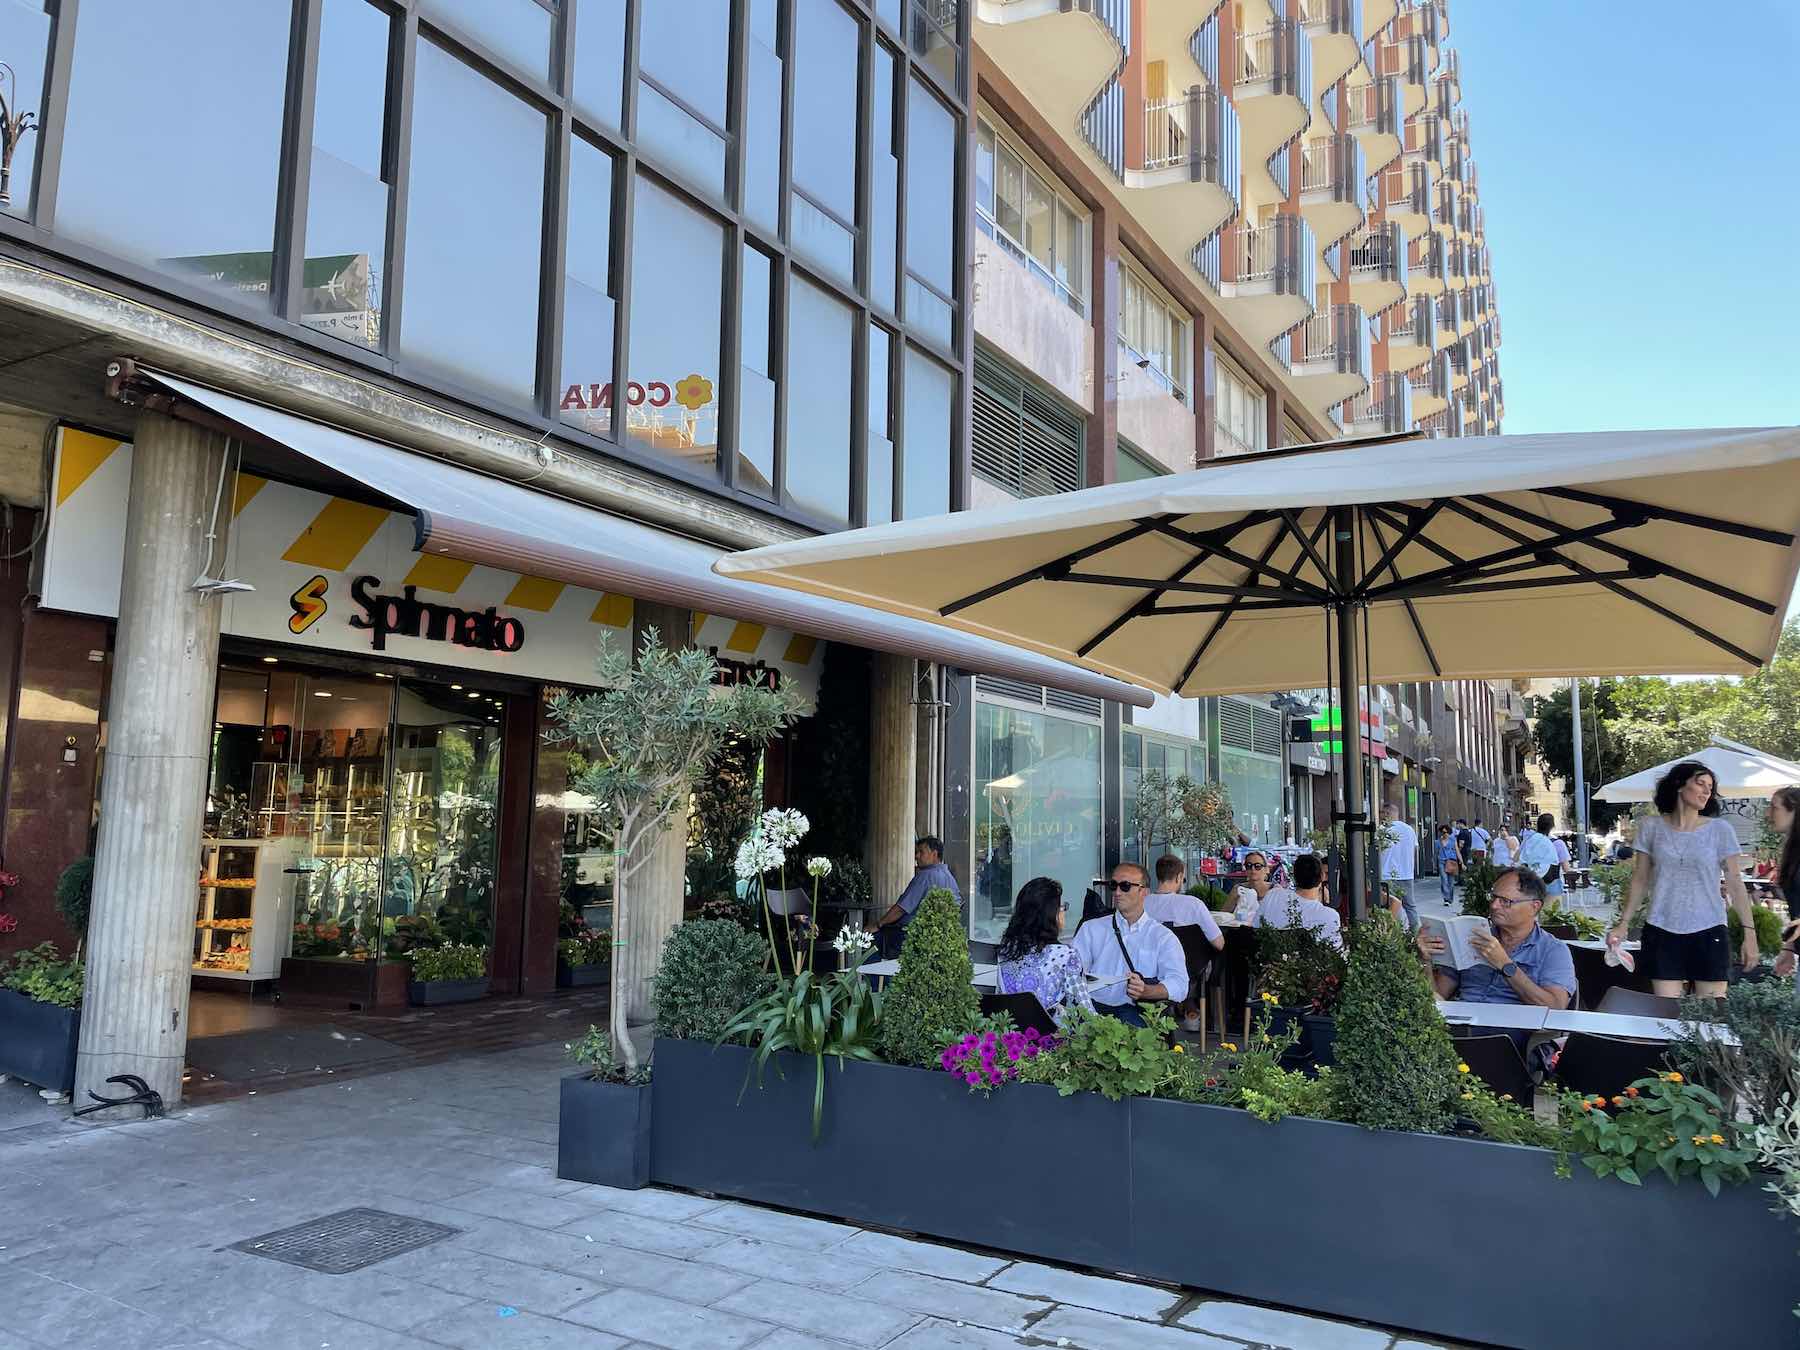 Questo è il bar Spinnato di Piazza Castelnuovo 16, vicino al Politeama, un'ottima opzione per provare una arancina nel centro di Palermo